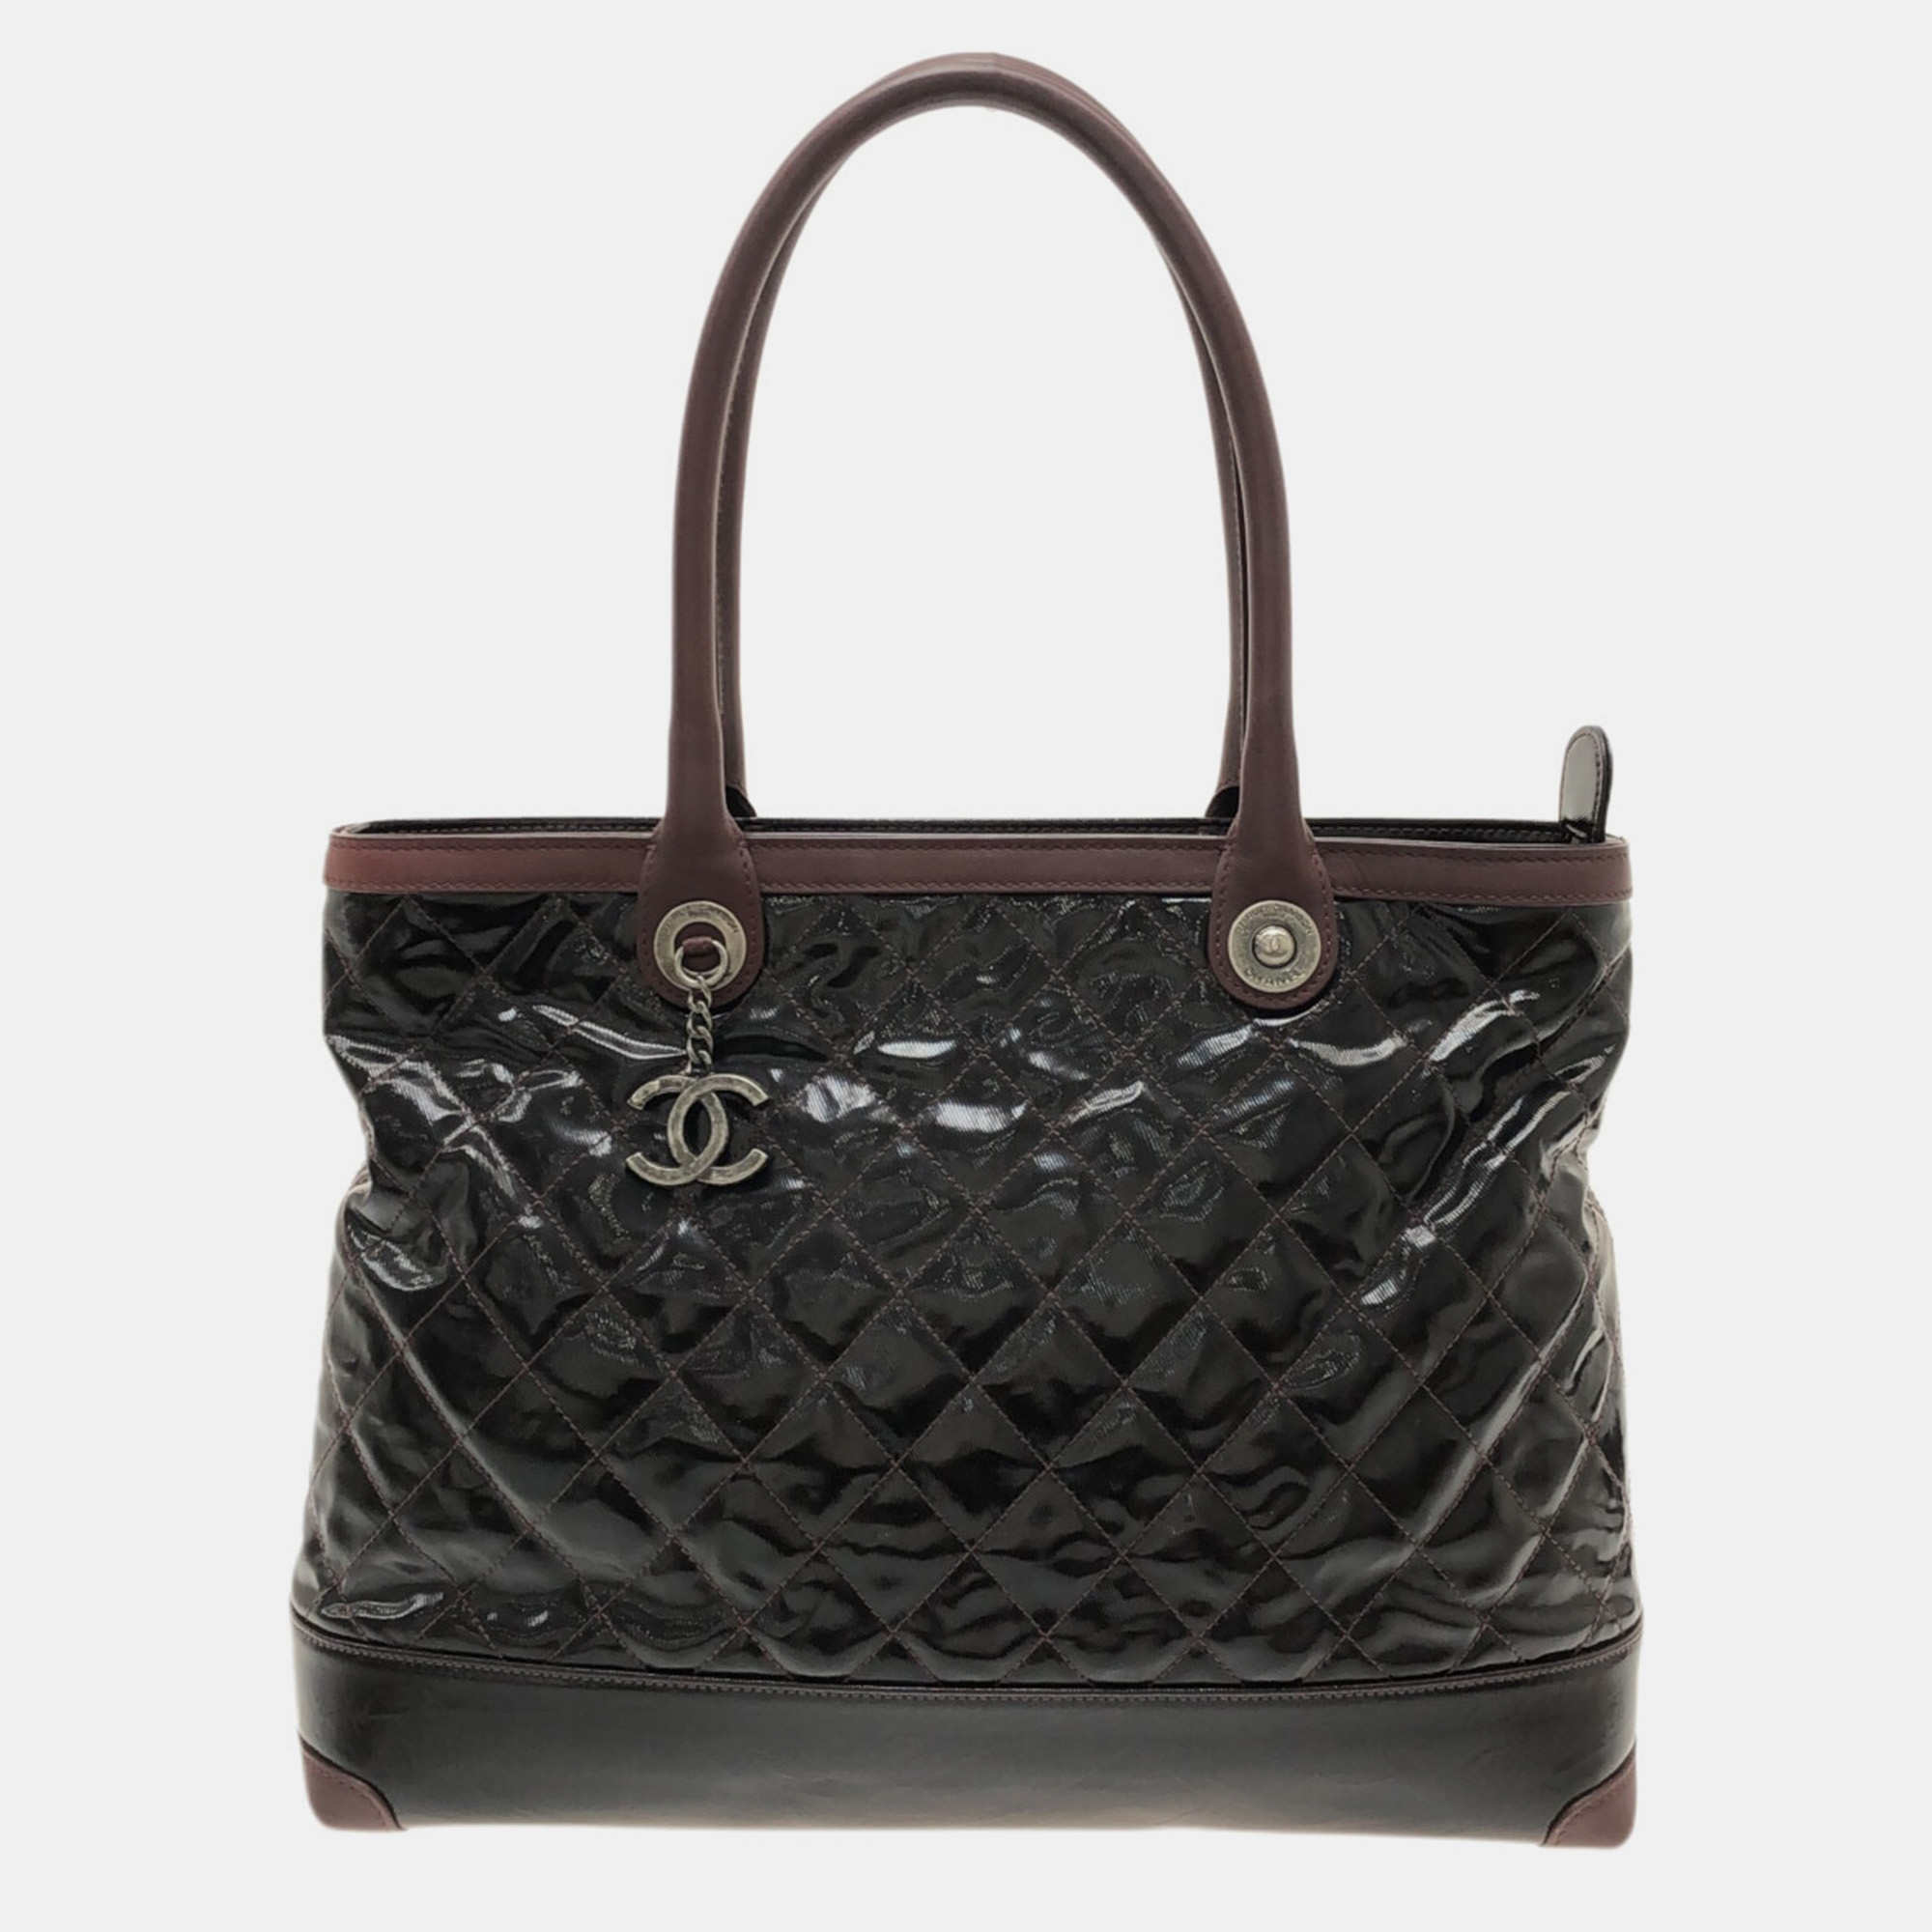 Chanel Black Patent Leather Shoulder Bag